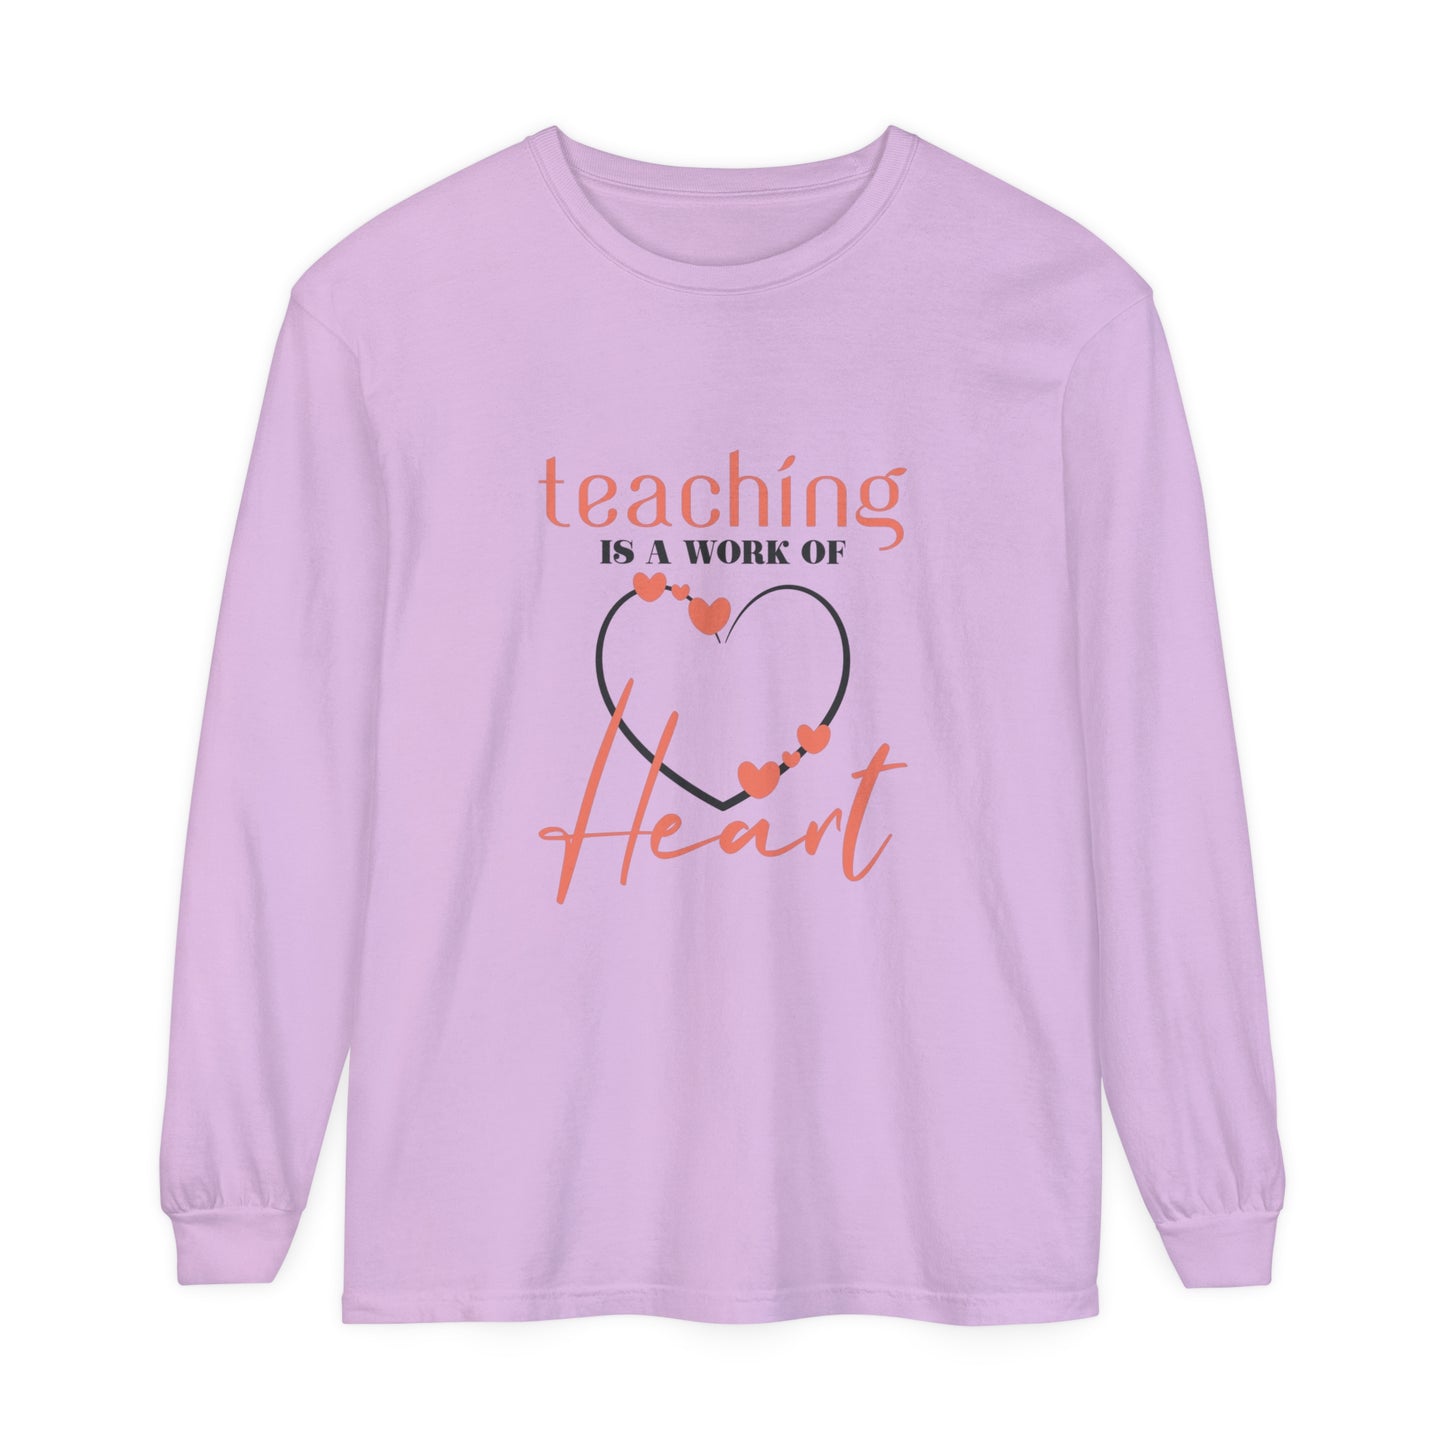 Teaching is a work of heart Women's Long Sleeve T-Shirt